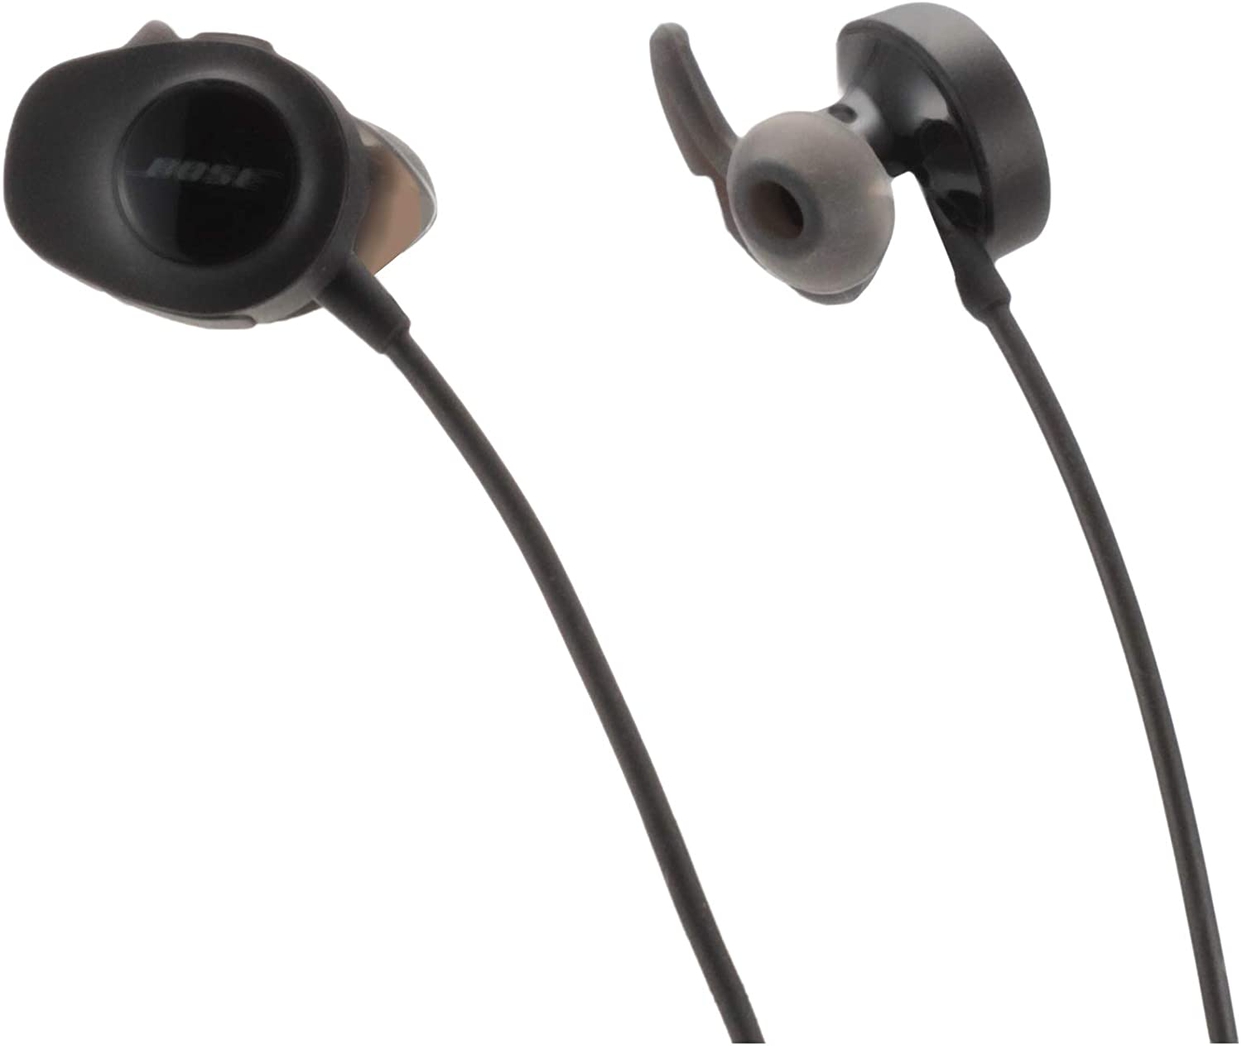 BOSE(ボーズ) SoundSport wireless headphonesの商品画像11 